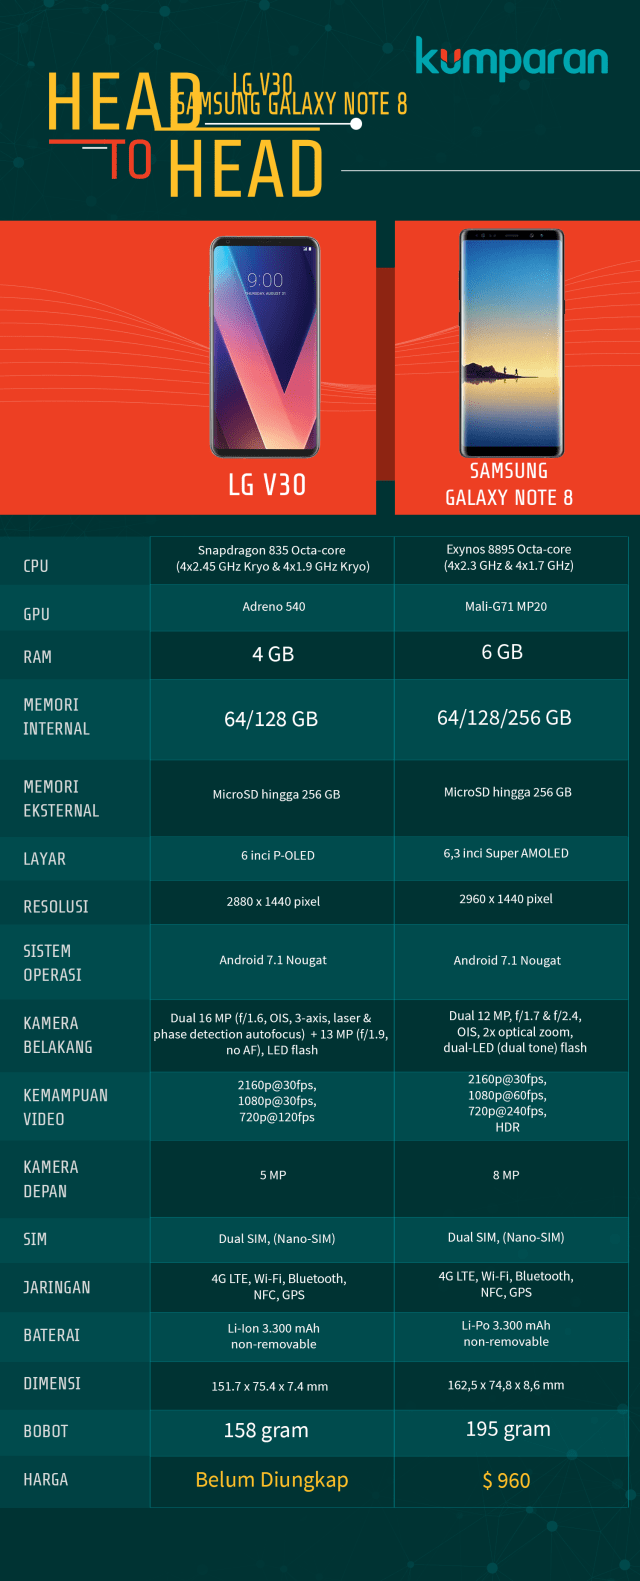 Head to Head: LG V30 vs Samsung Galaxy Note 8. (Foto: Mateus Situmorang/kumparan)